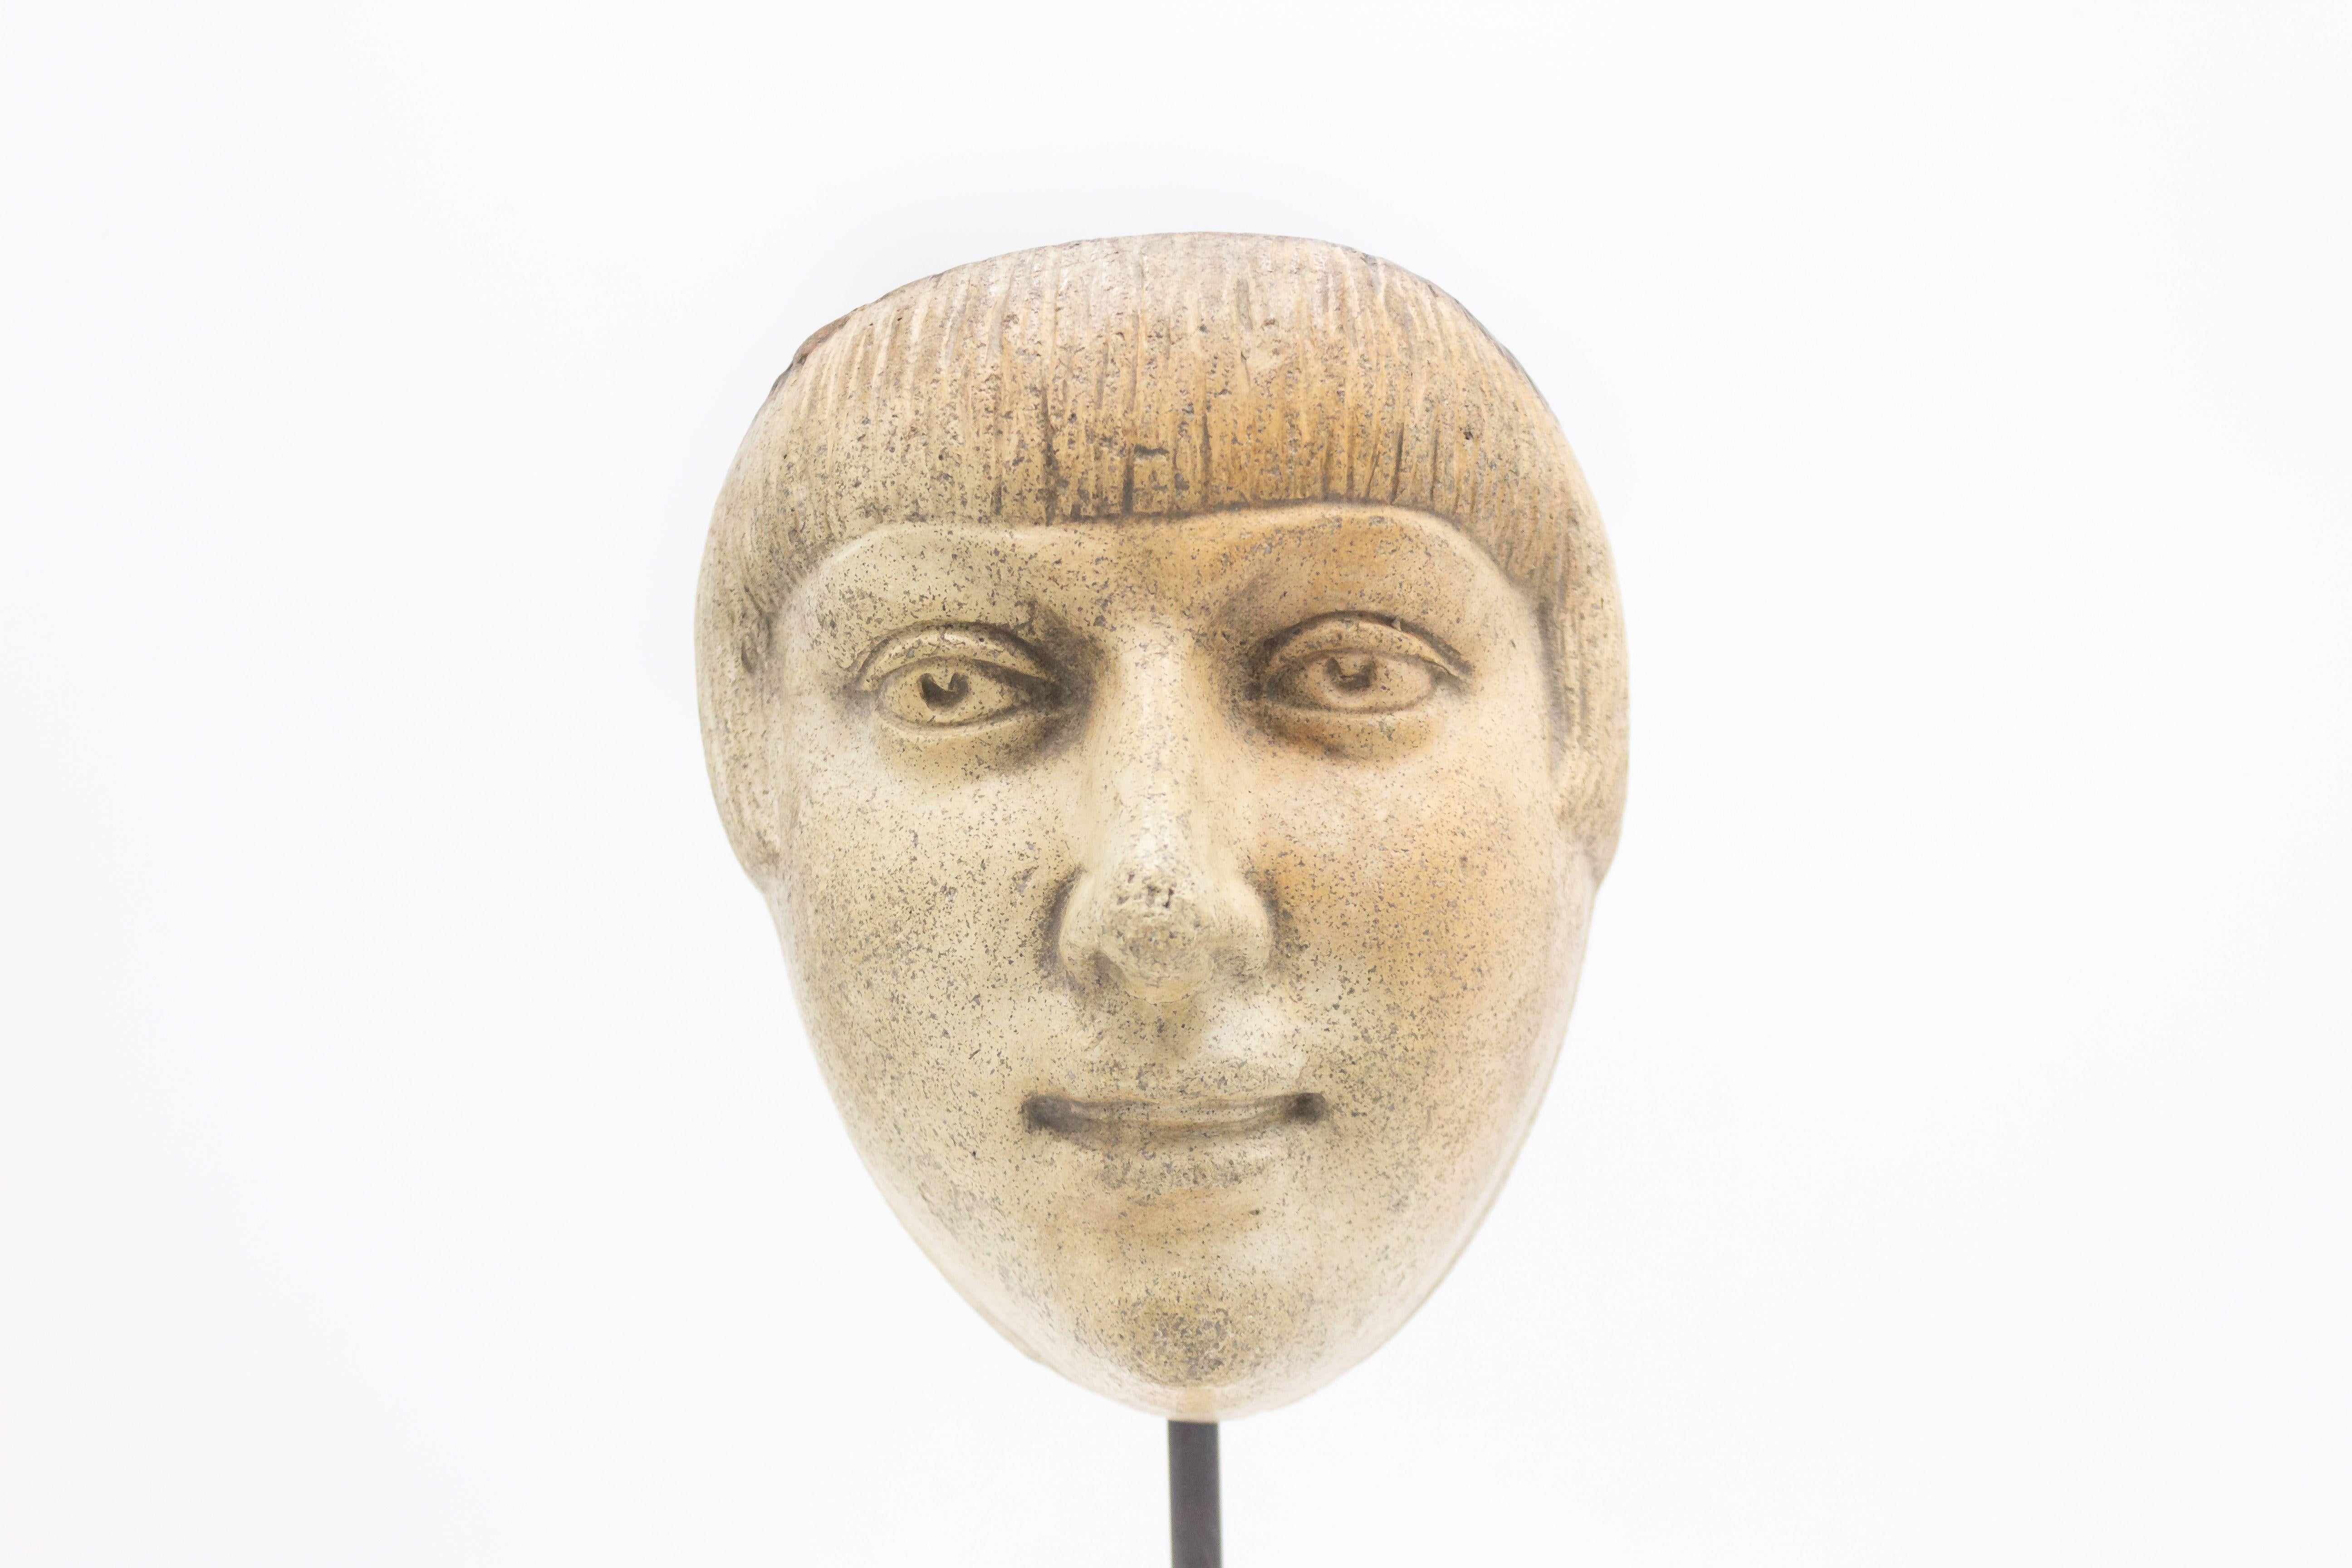 Kontinentaldeutsche (spätes 19. Jh.) Terrakotta-Maskenformbüste eines lächelnden männlichen Gesichts mit einem 